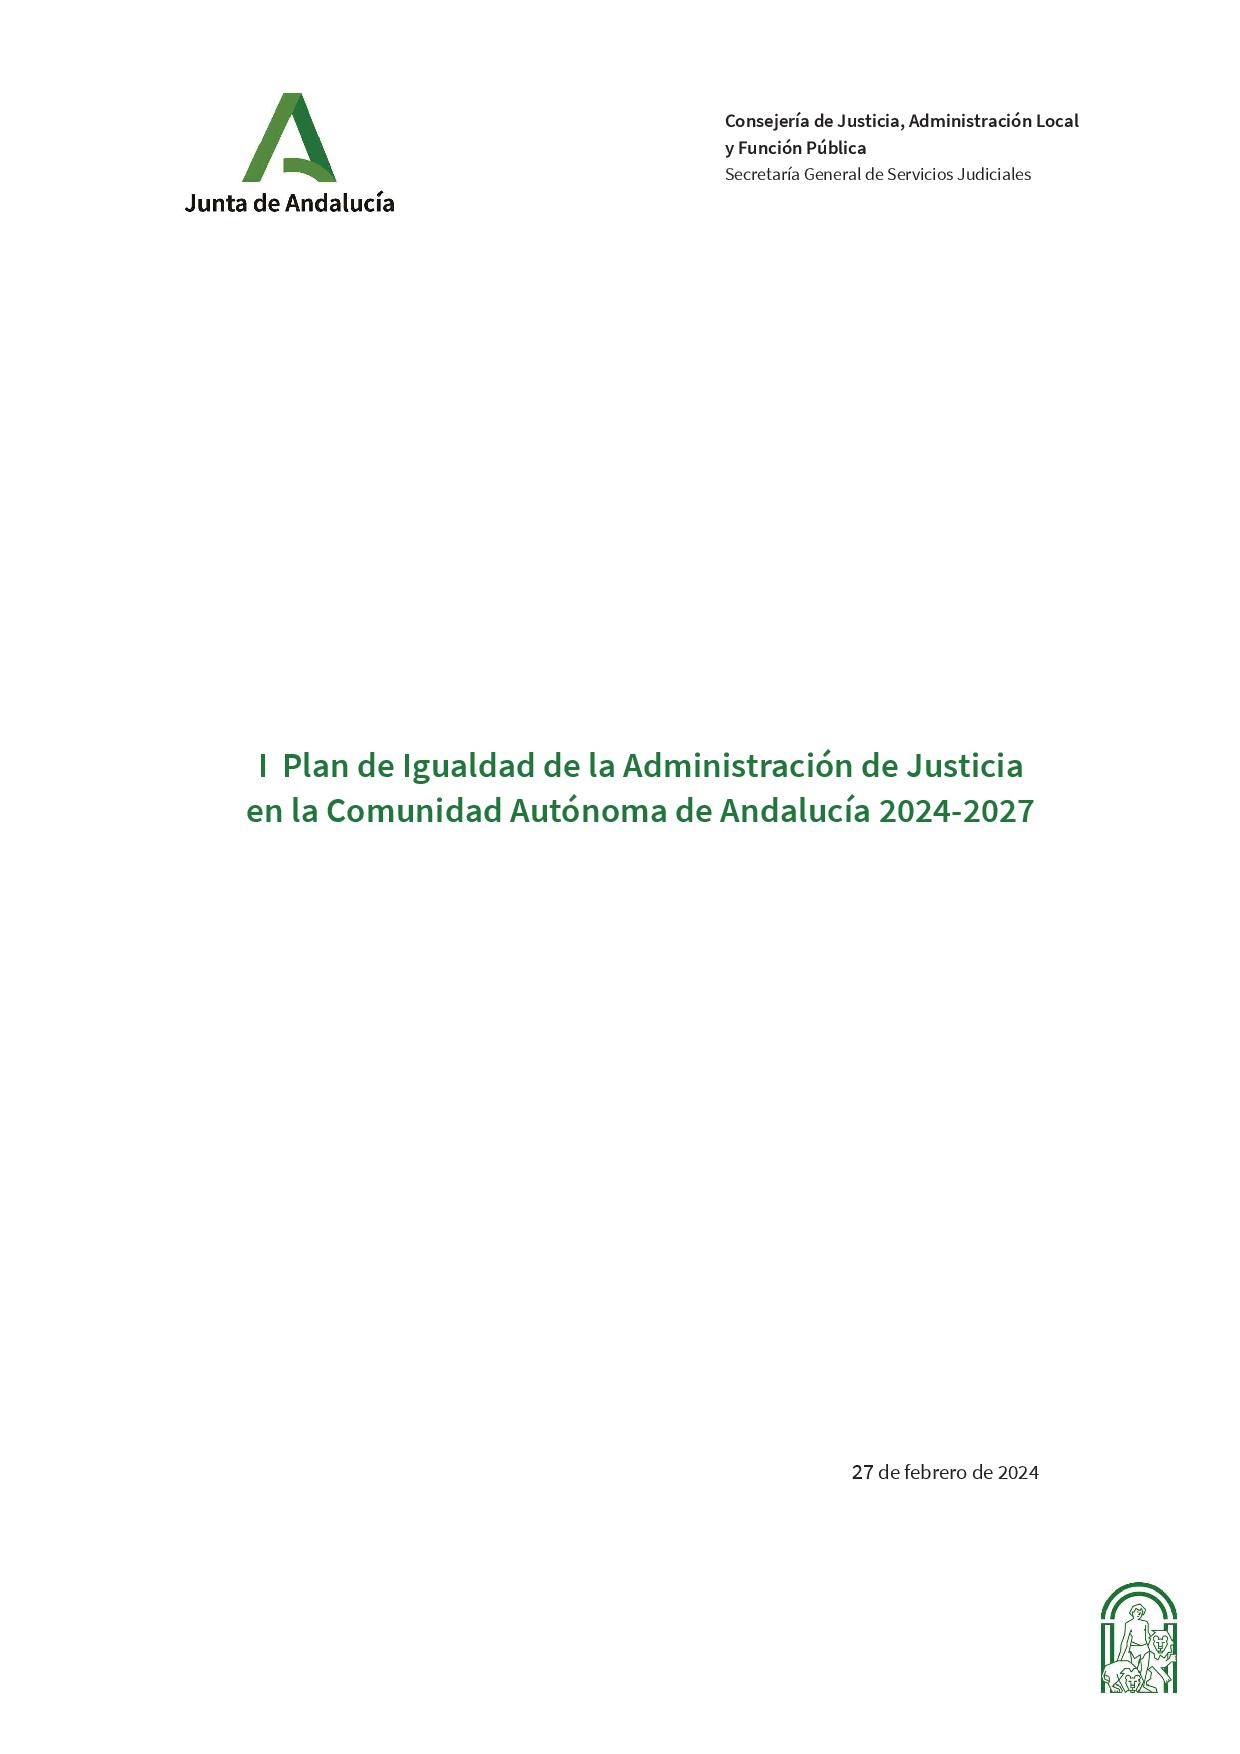 CJALFP-240307-Portada-Plan-Igualdad-Justicia.jpg